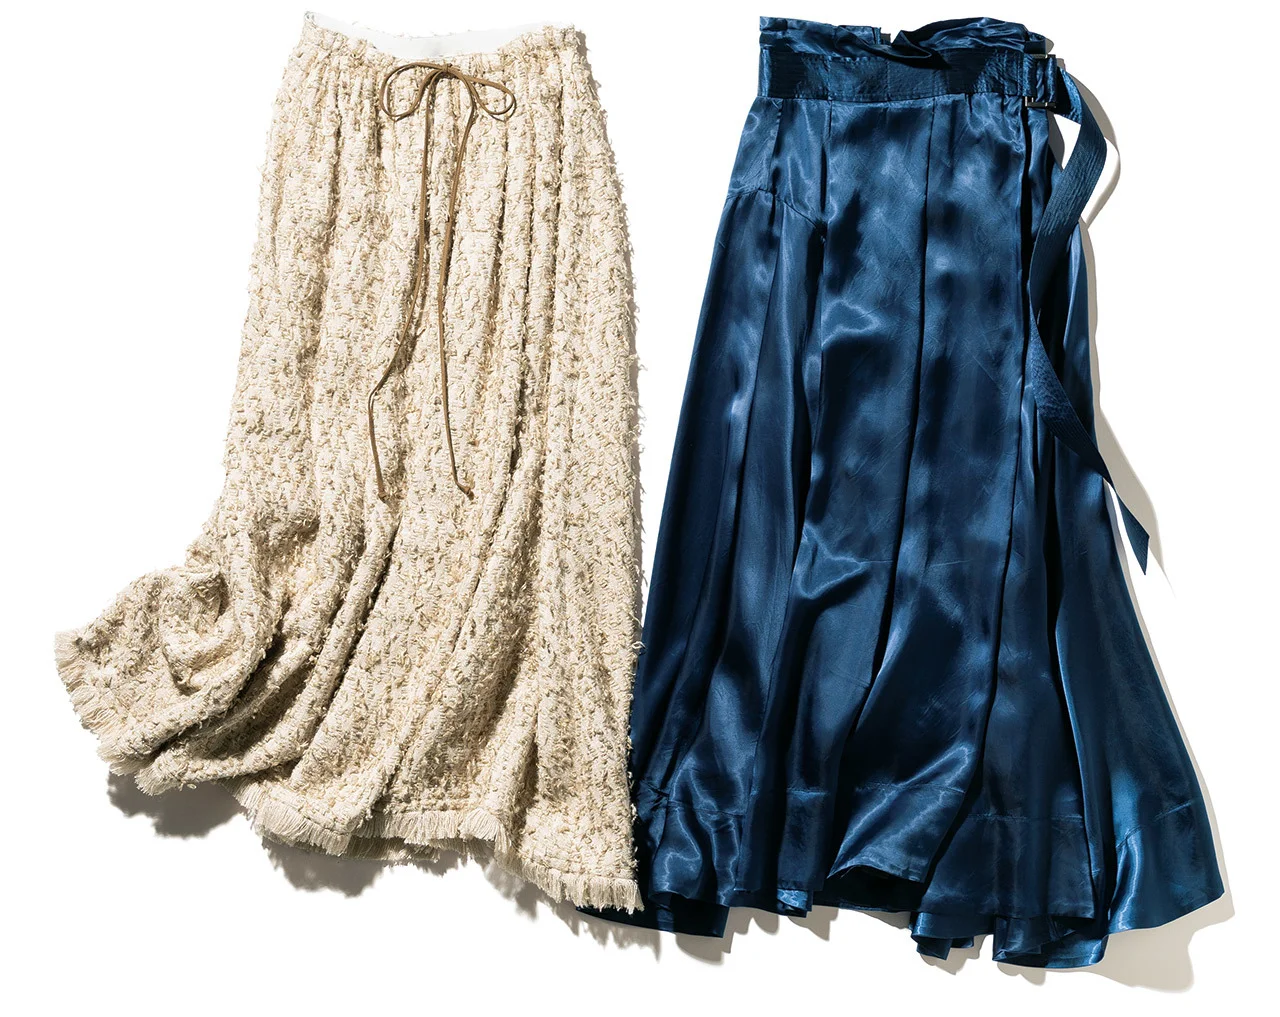 磯部のツヤ素材のラップスカート、三尋木のツイードのフレアスカート